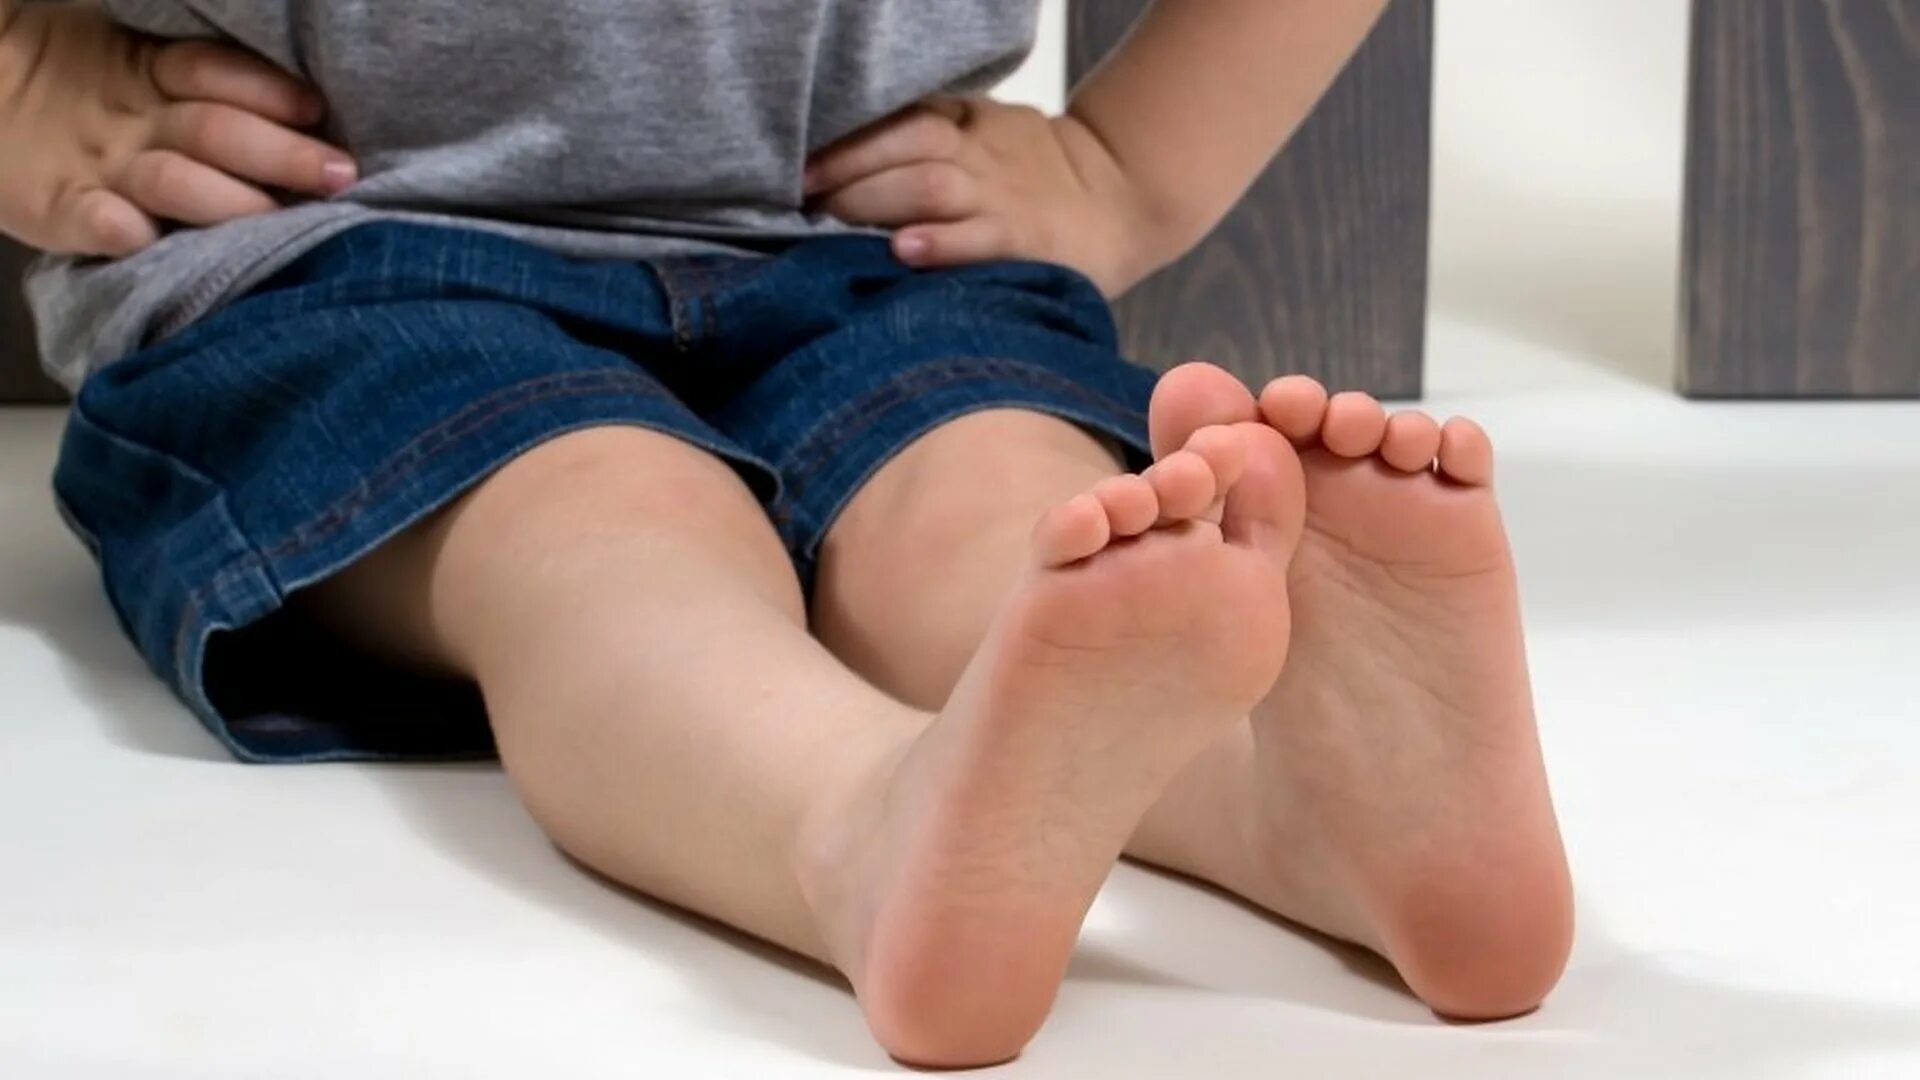 Дети фут. Ножки детей 7 лет. Гигантские детские ноги. Feet дети.